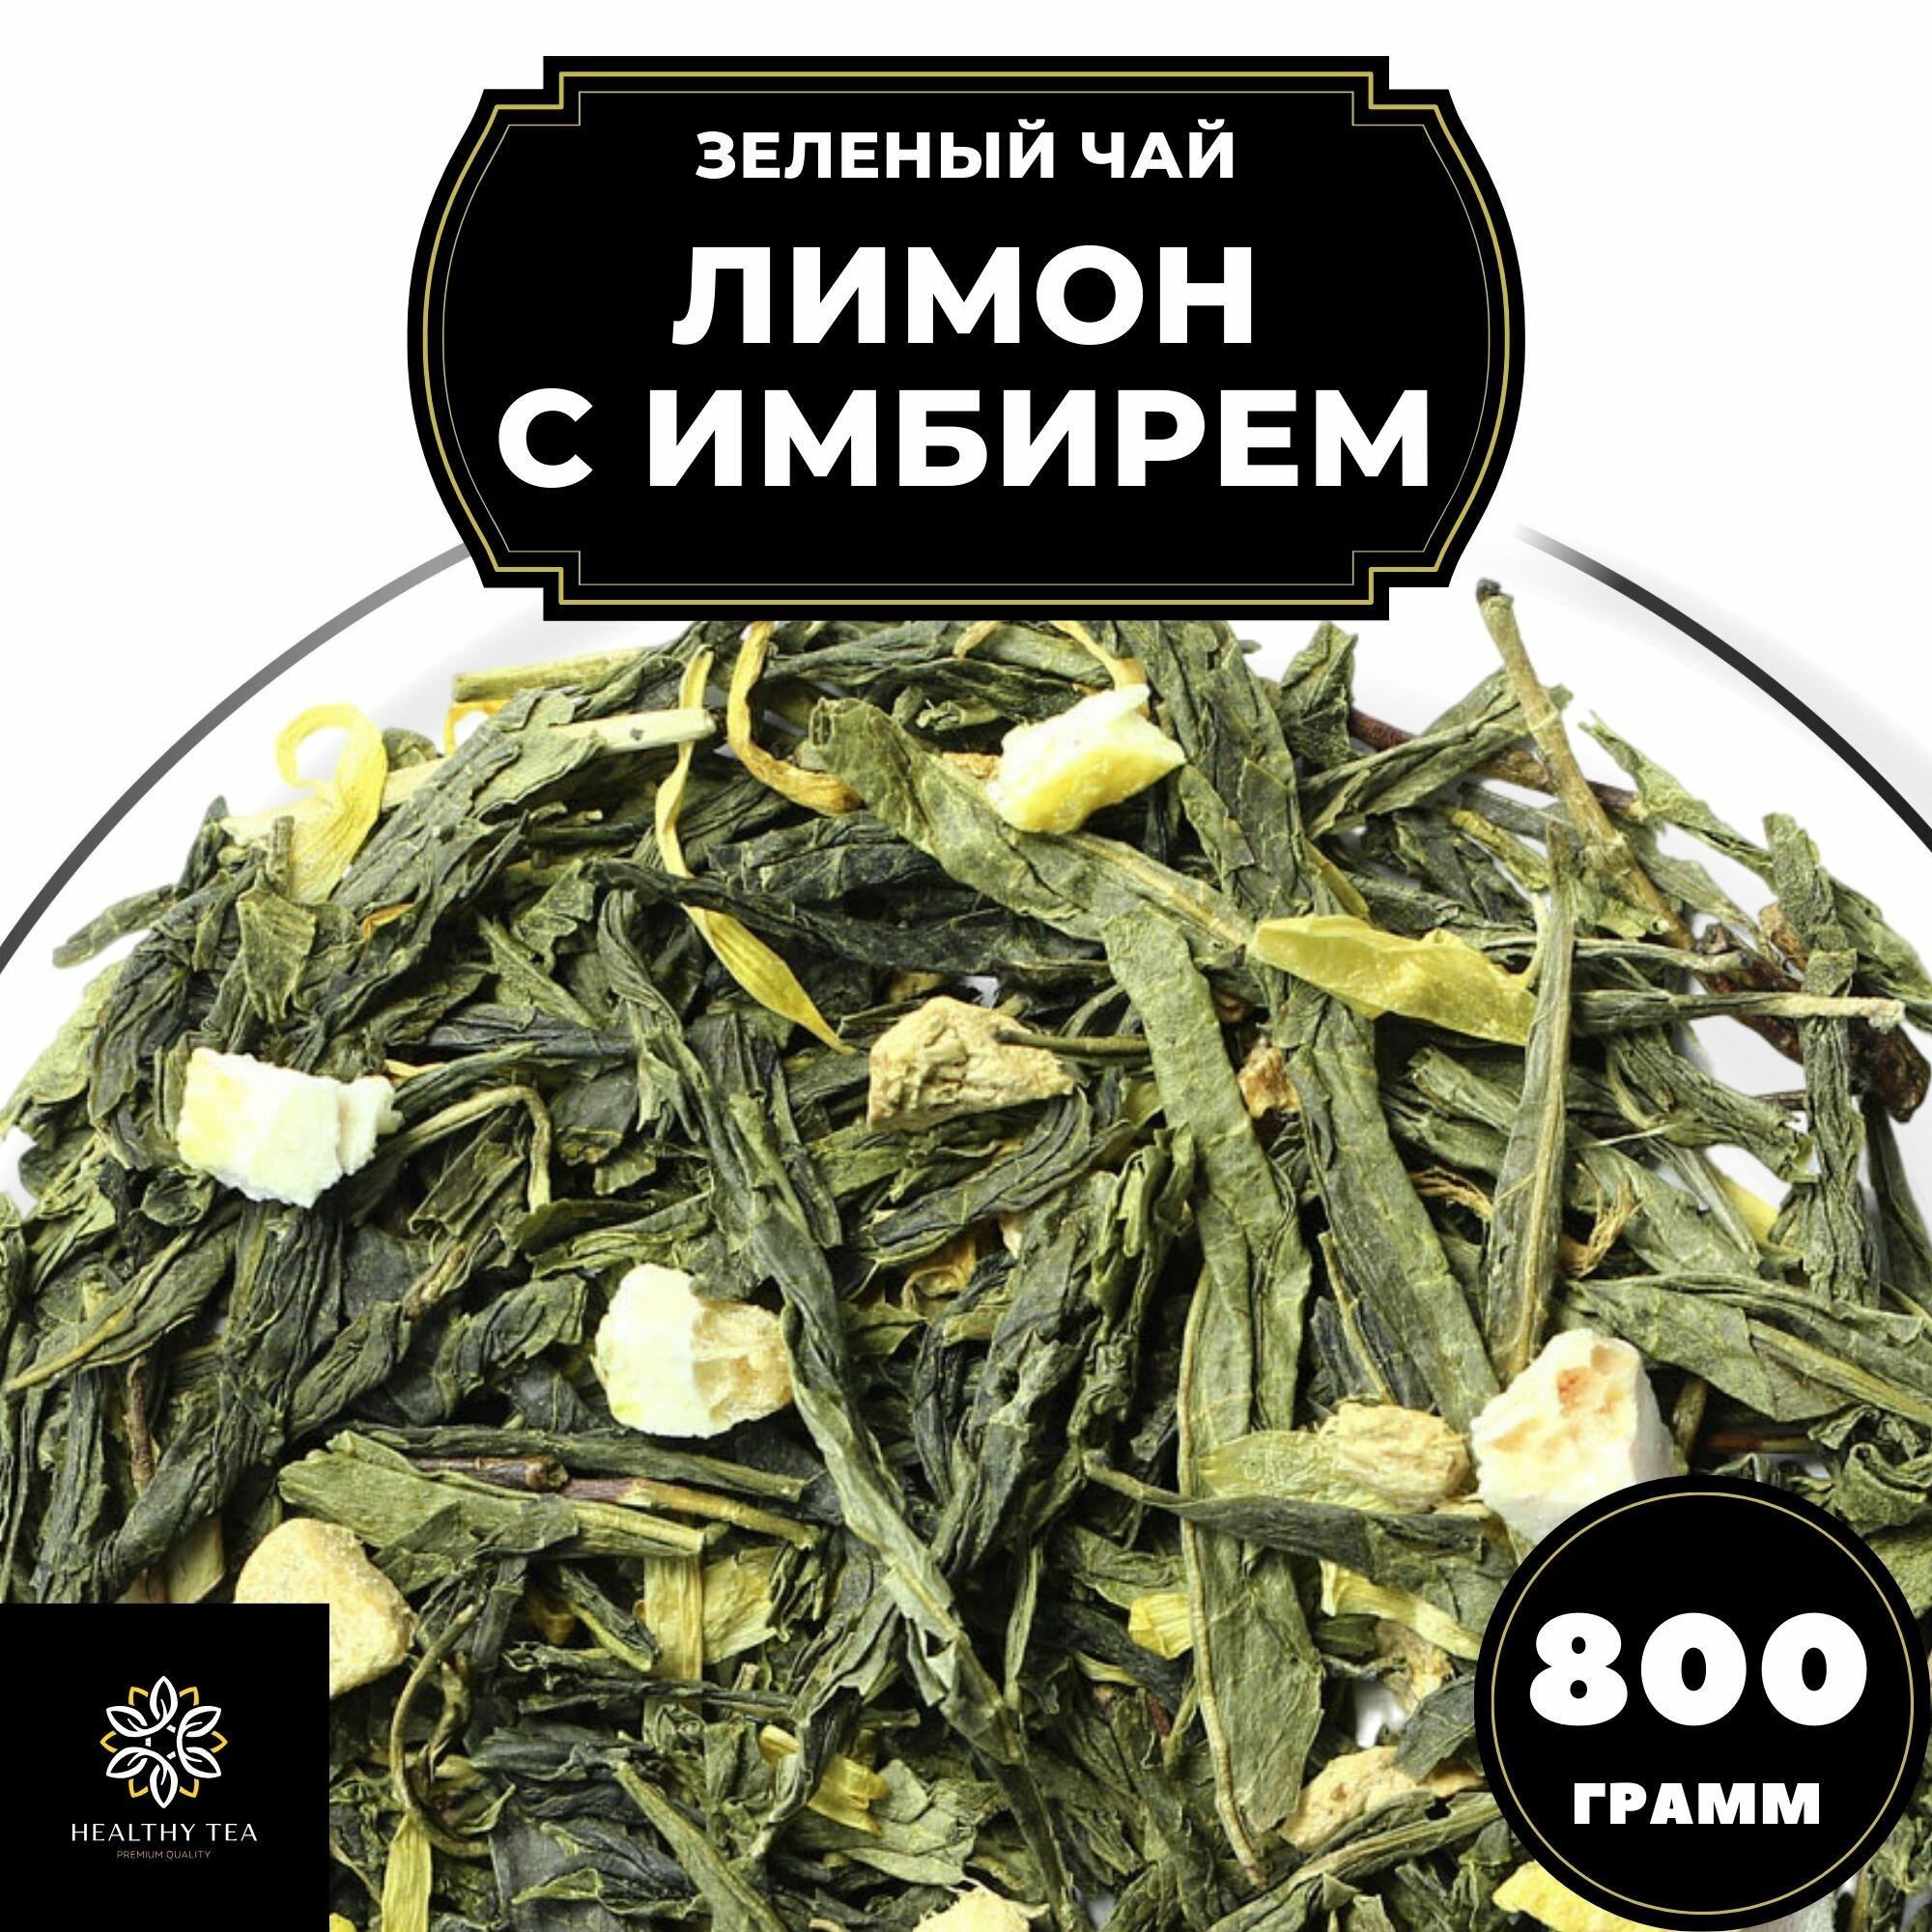 Китайский Зеленый чай с имбирем, лимоном и календулой Лимон с имбирем Полезный чай / HEALTHY TEA, 800 г